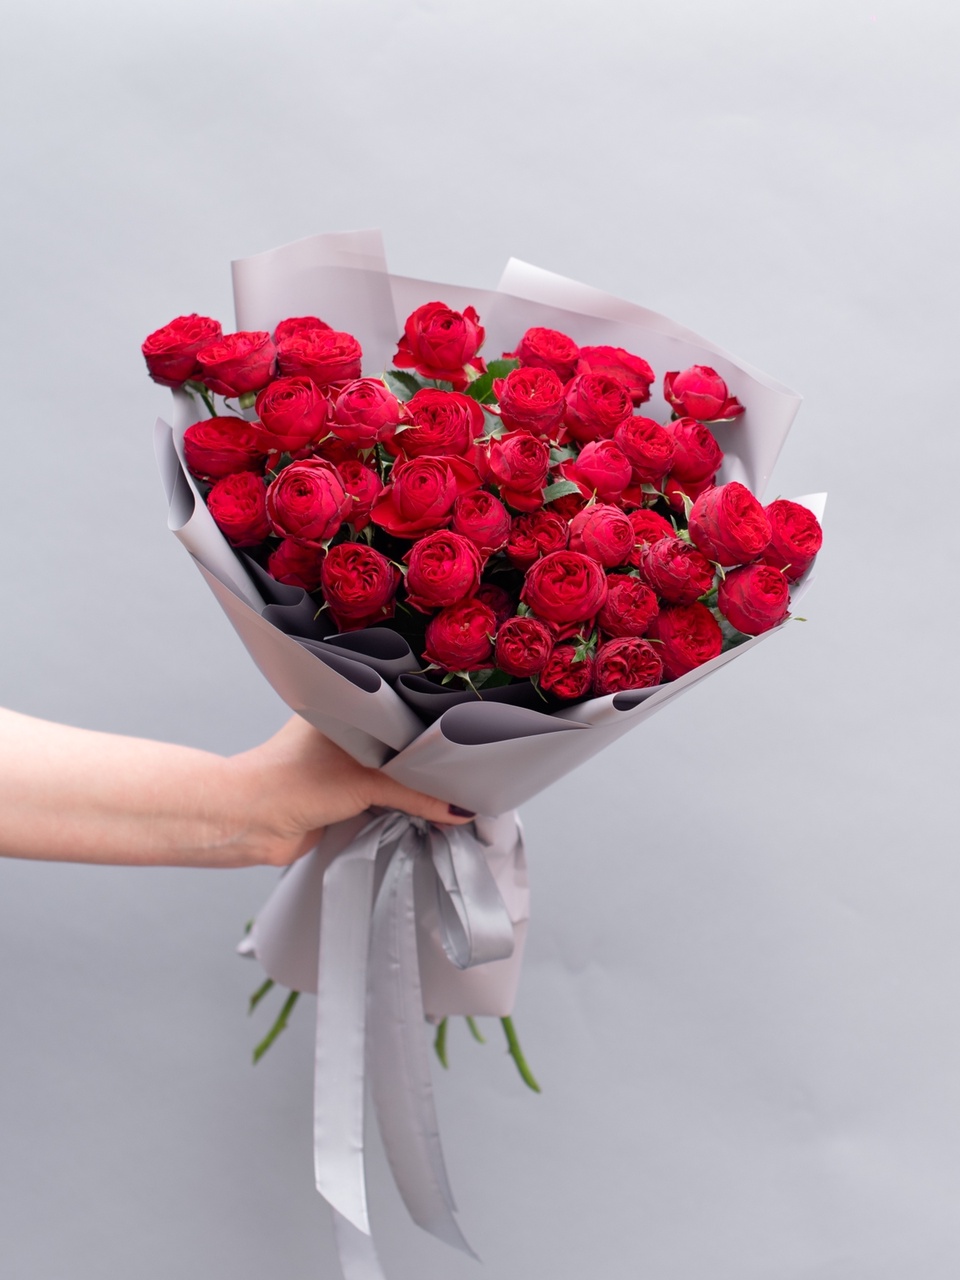 Кустовые пионовидные розы - 2 000 ₽, заказать онлайн.